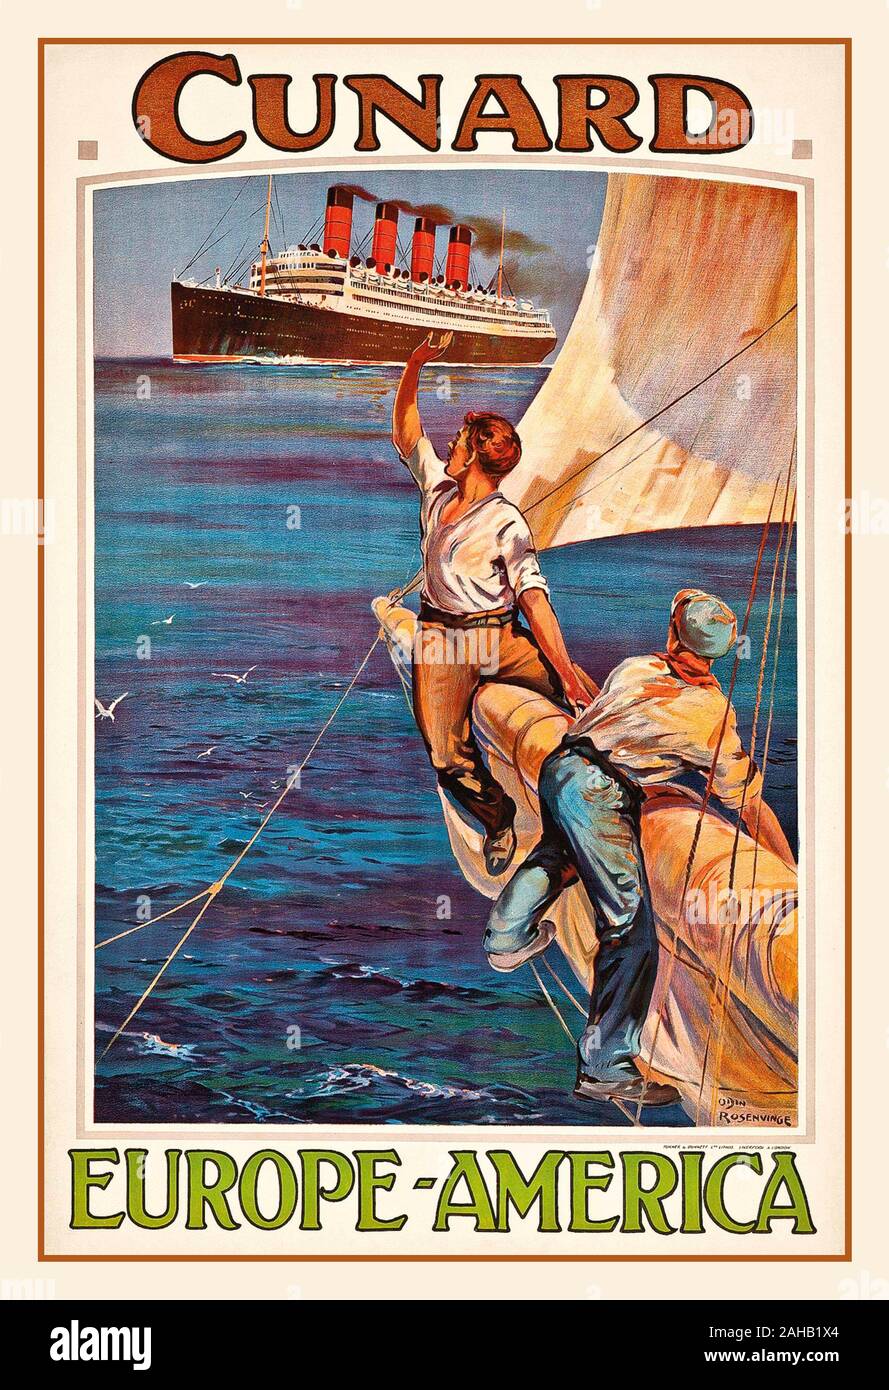 Vintage 1920 Cunard vaporera Poster crucero Trasatlántico cuatro embudos 'Cunard, EUROPA-AMÉRICA" litografía en colores, c.1920, impreso por Turner y Dunnett Ltd., Londres, por el artista diseñador Rosenvinge Odin (1880-1957) Los hombres jóvenes marineros onda a Cunard Trasatlántico como furl sails en su barco de vela tradicional Foto de stock